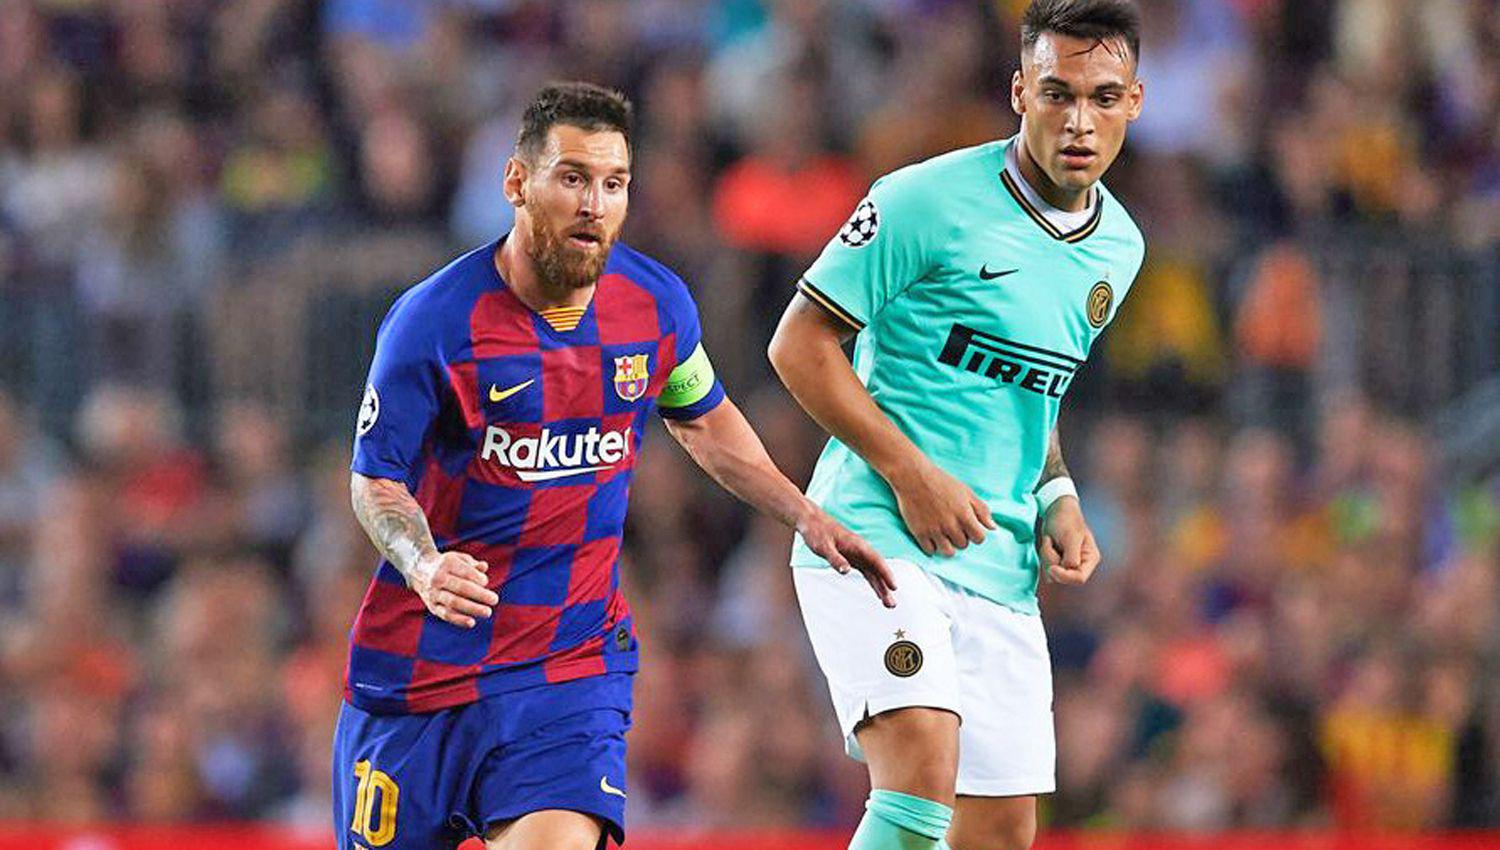  El Presidente del Barça aseguró la continuidad de Messi pero no la llegada de Martínez